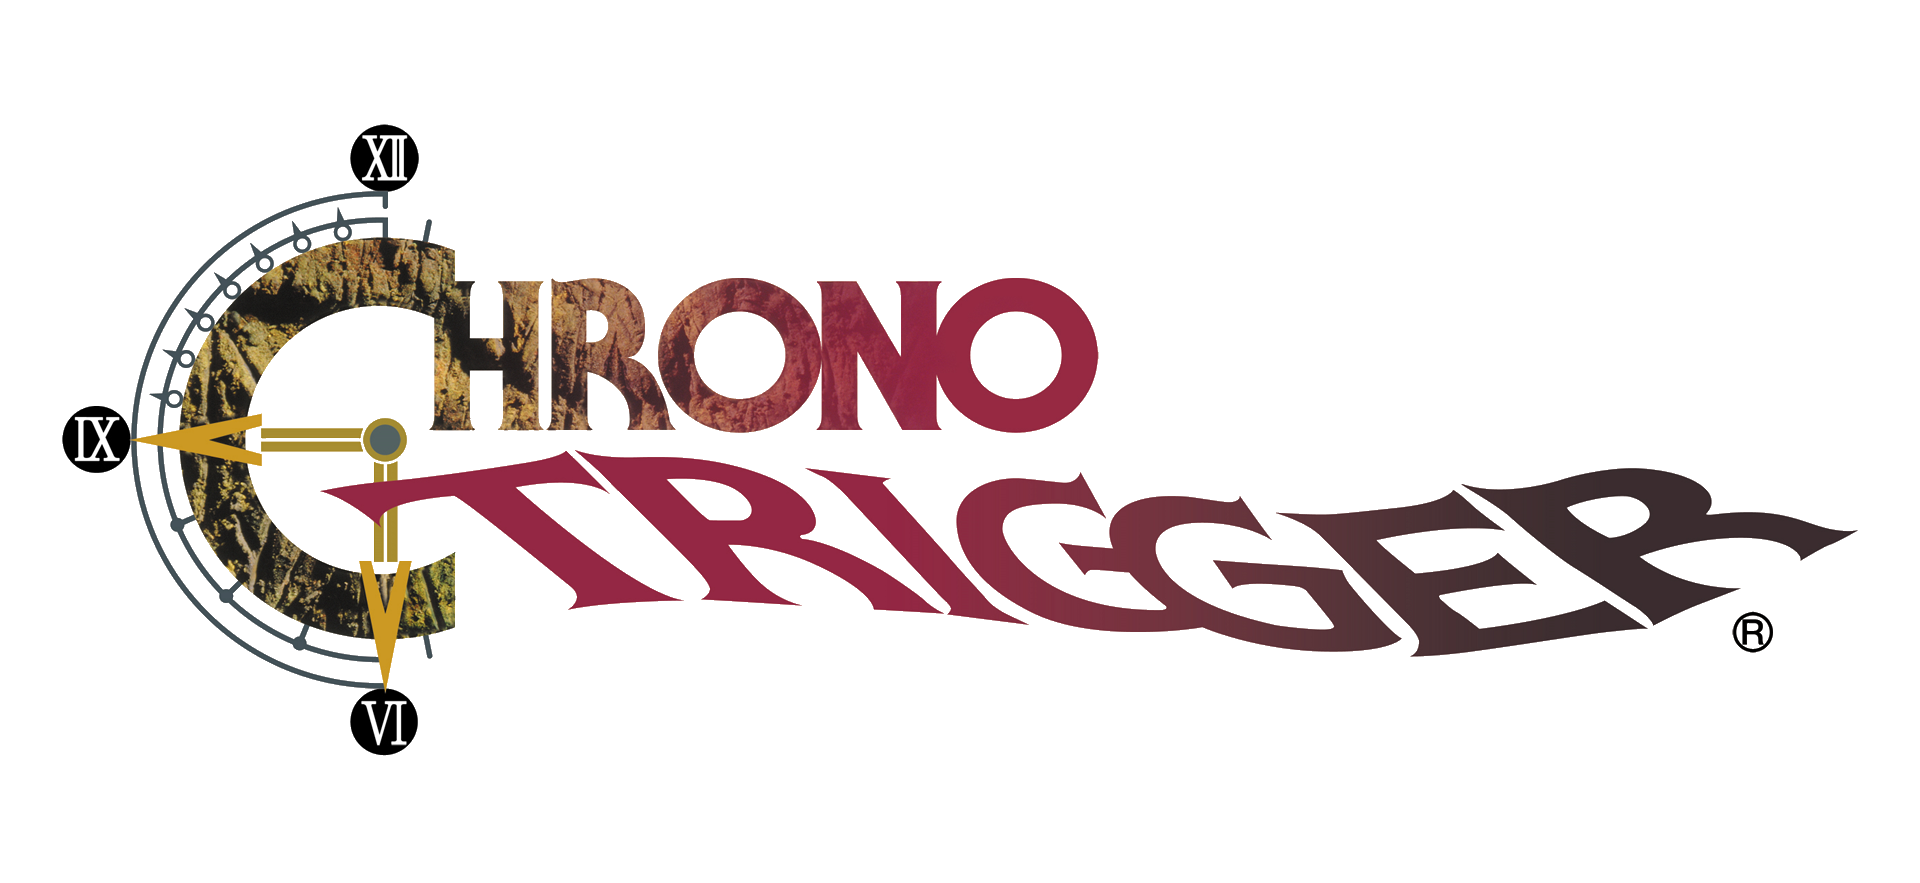 Chrono Trigger Transparent Ba